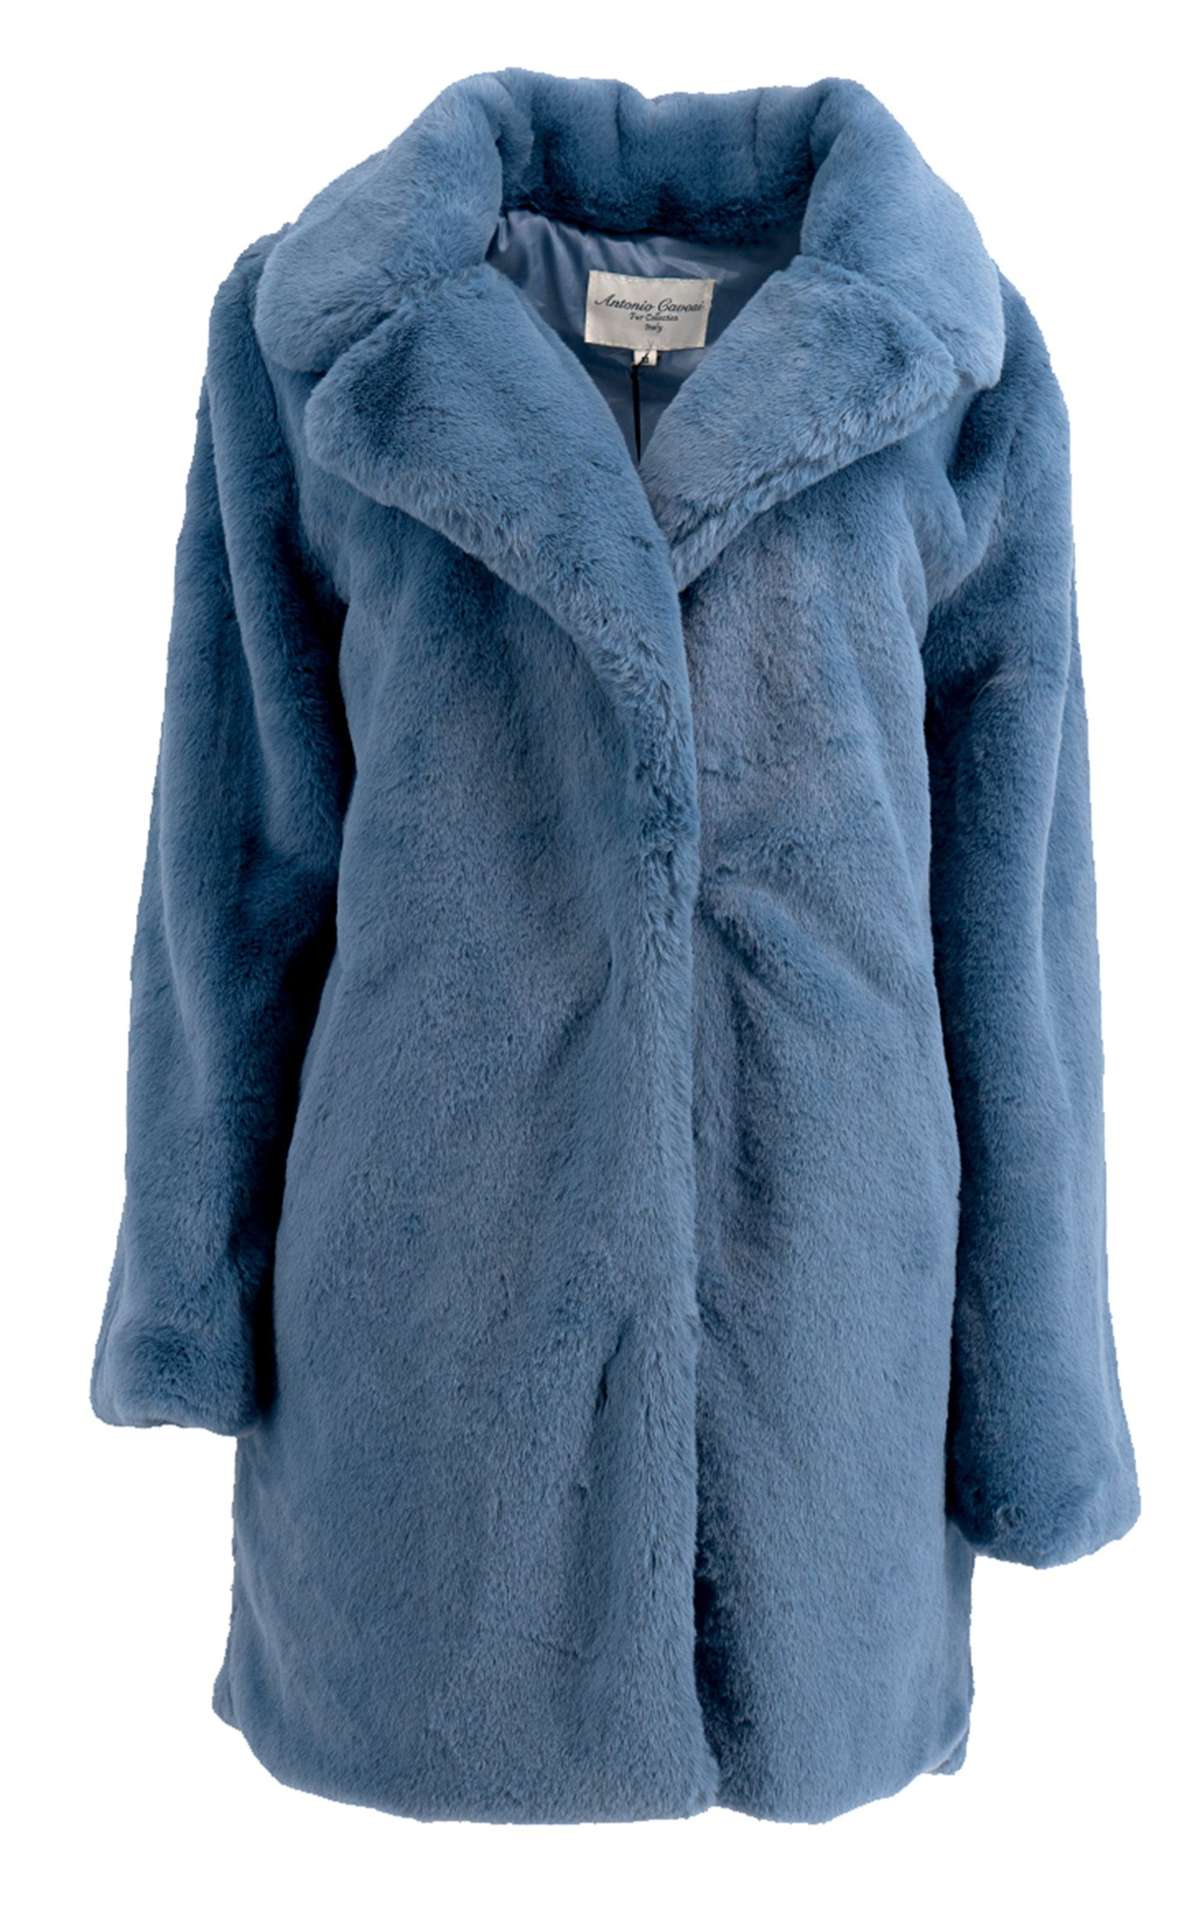 Куртка из искусственного меха Синяя шуба оверсайз из плетеной шубы